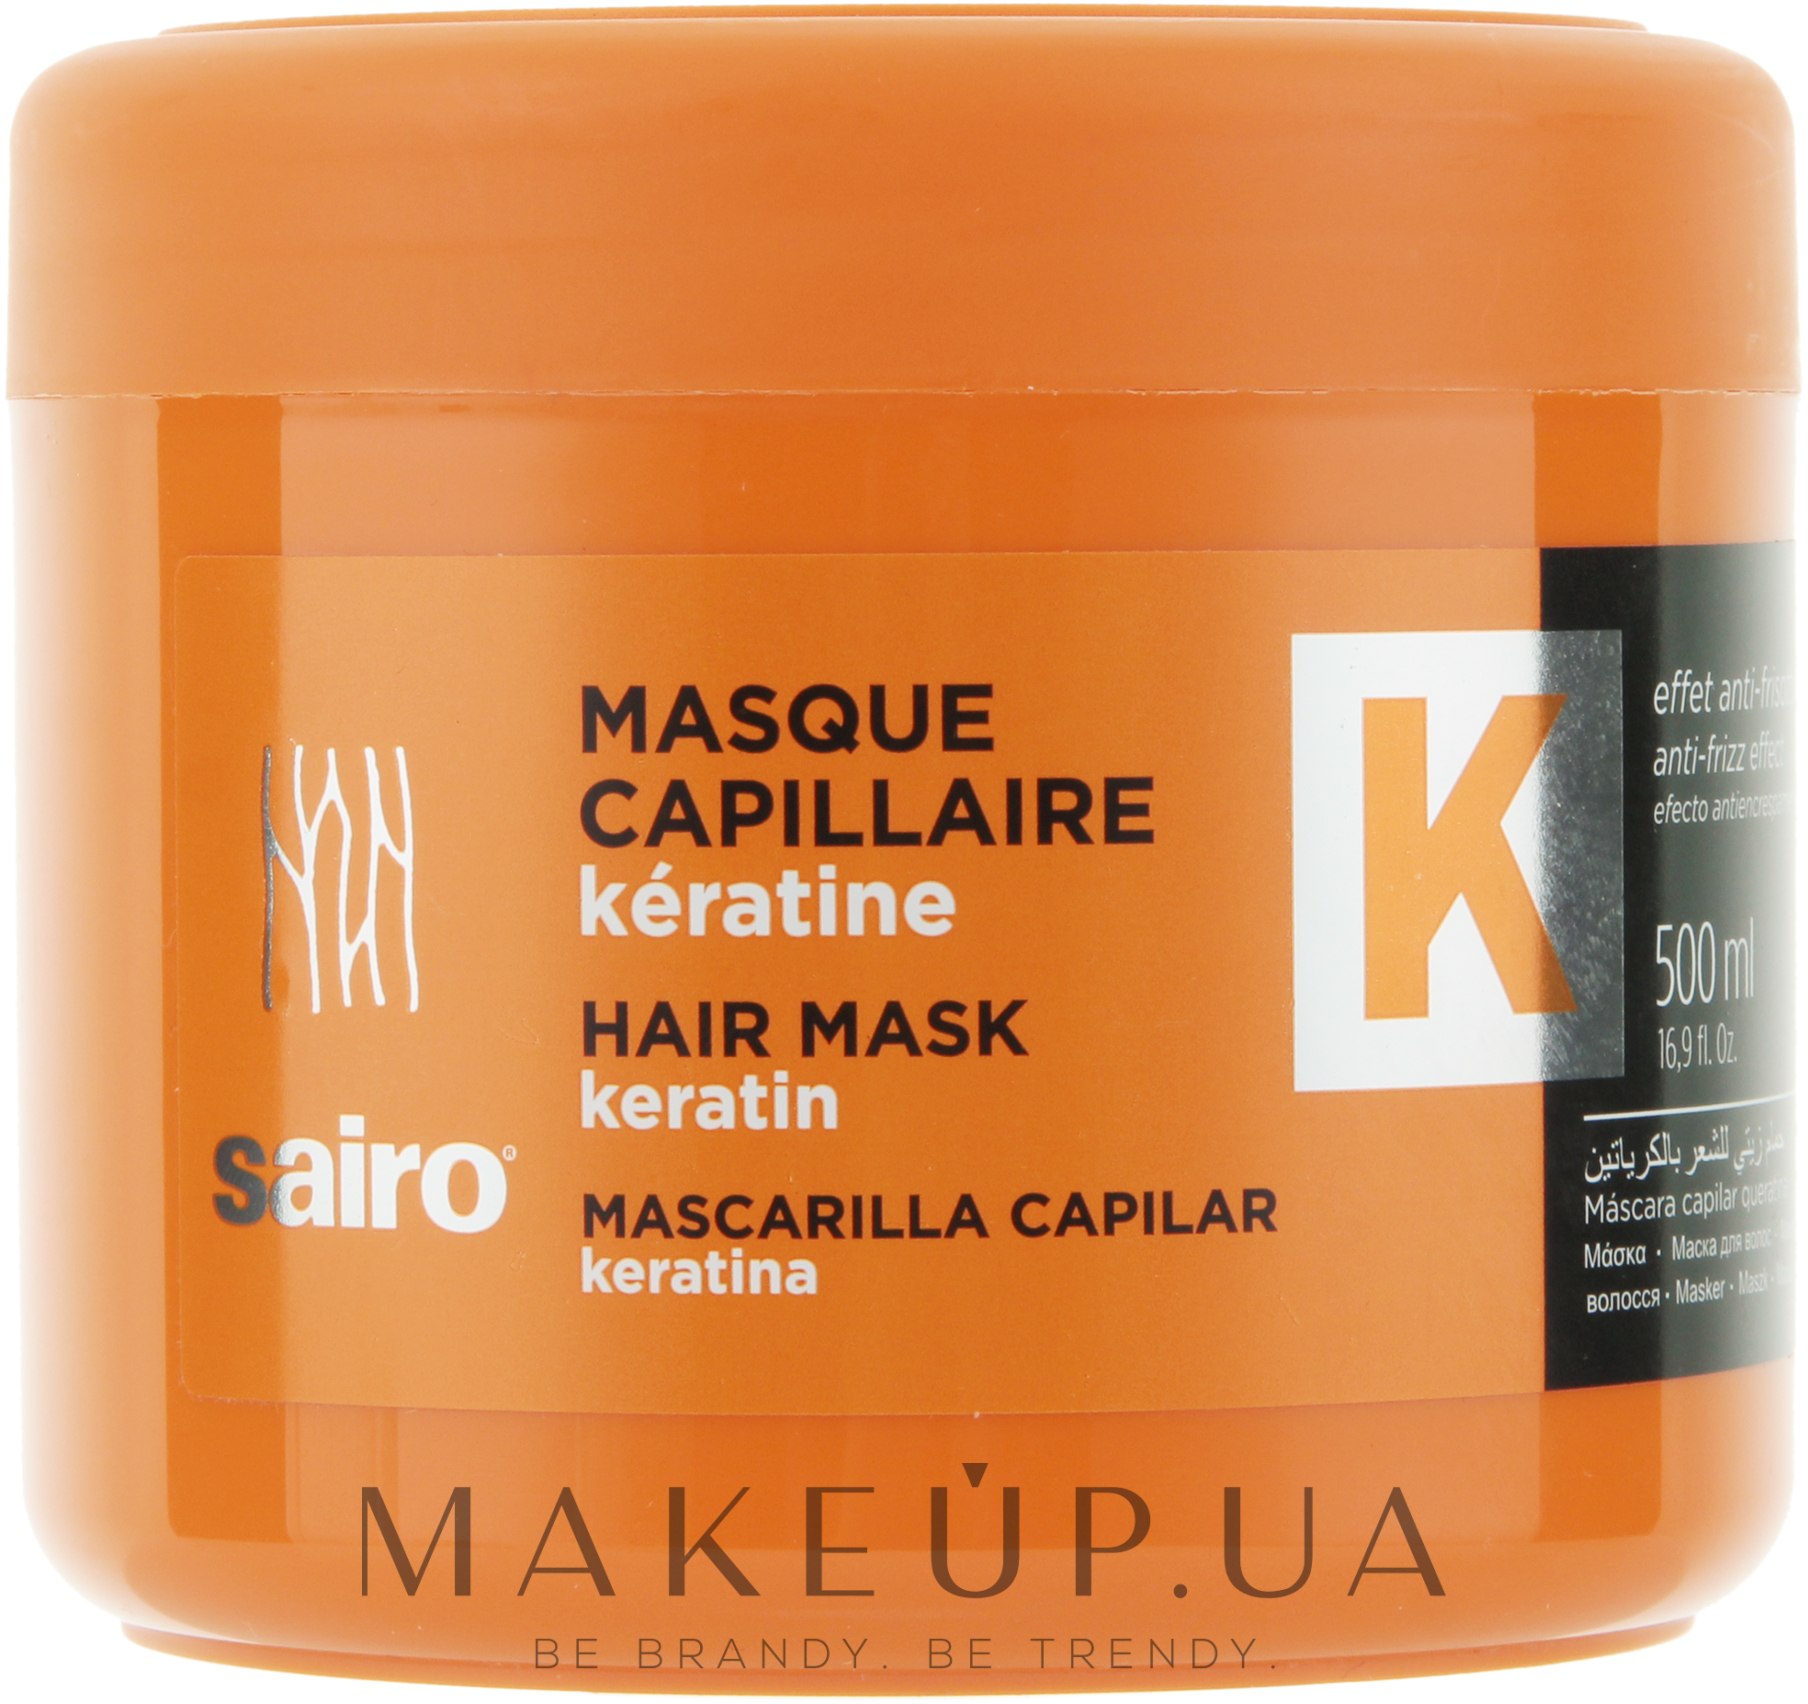 Кератиновая маска отзывы. Маска для волос с кератином. Keratin hair Mask. Маска с кератином Испания Sairo. Профессиональная маска кератин для волос 1 литр.